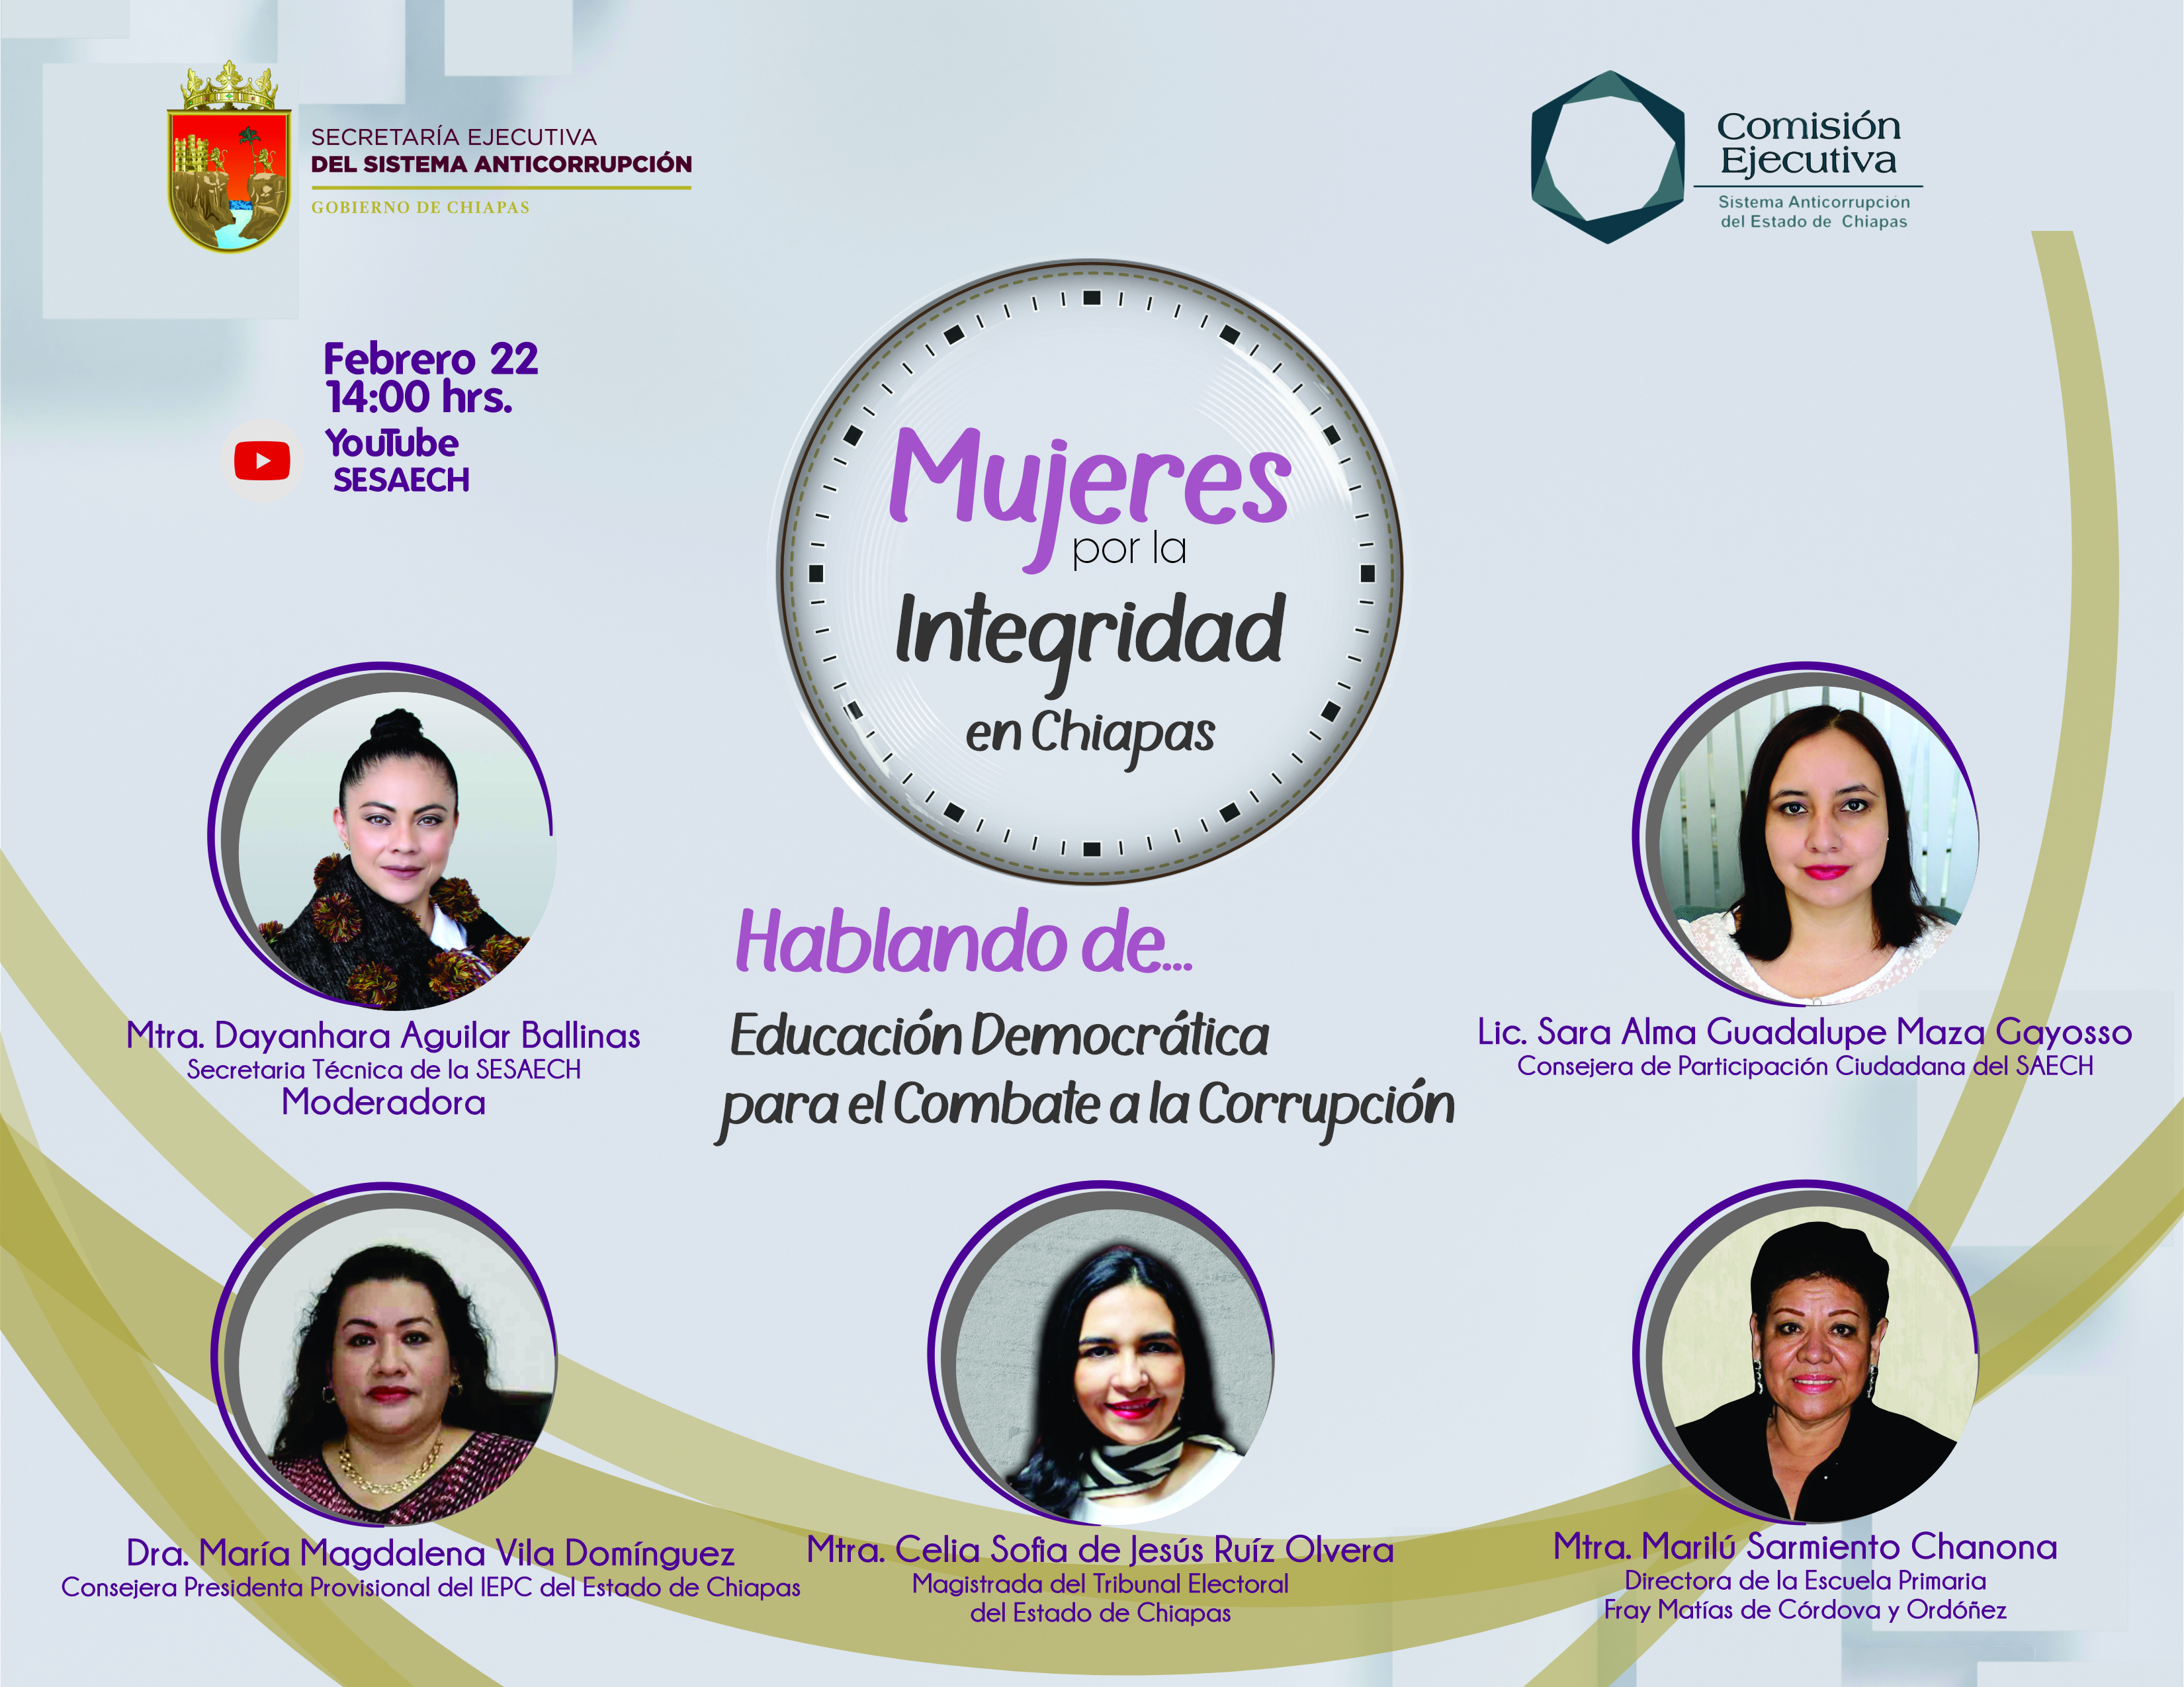 Mujeres por la integridad en Chiapas: hablando de Educación Democrática para el Combate a la Corrupción